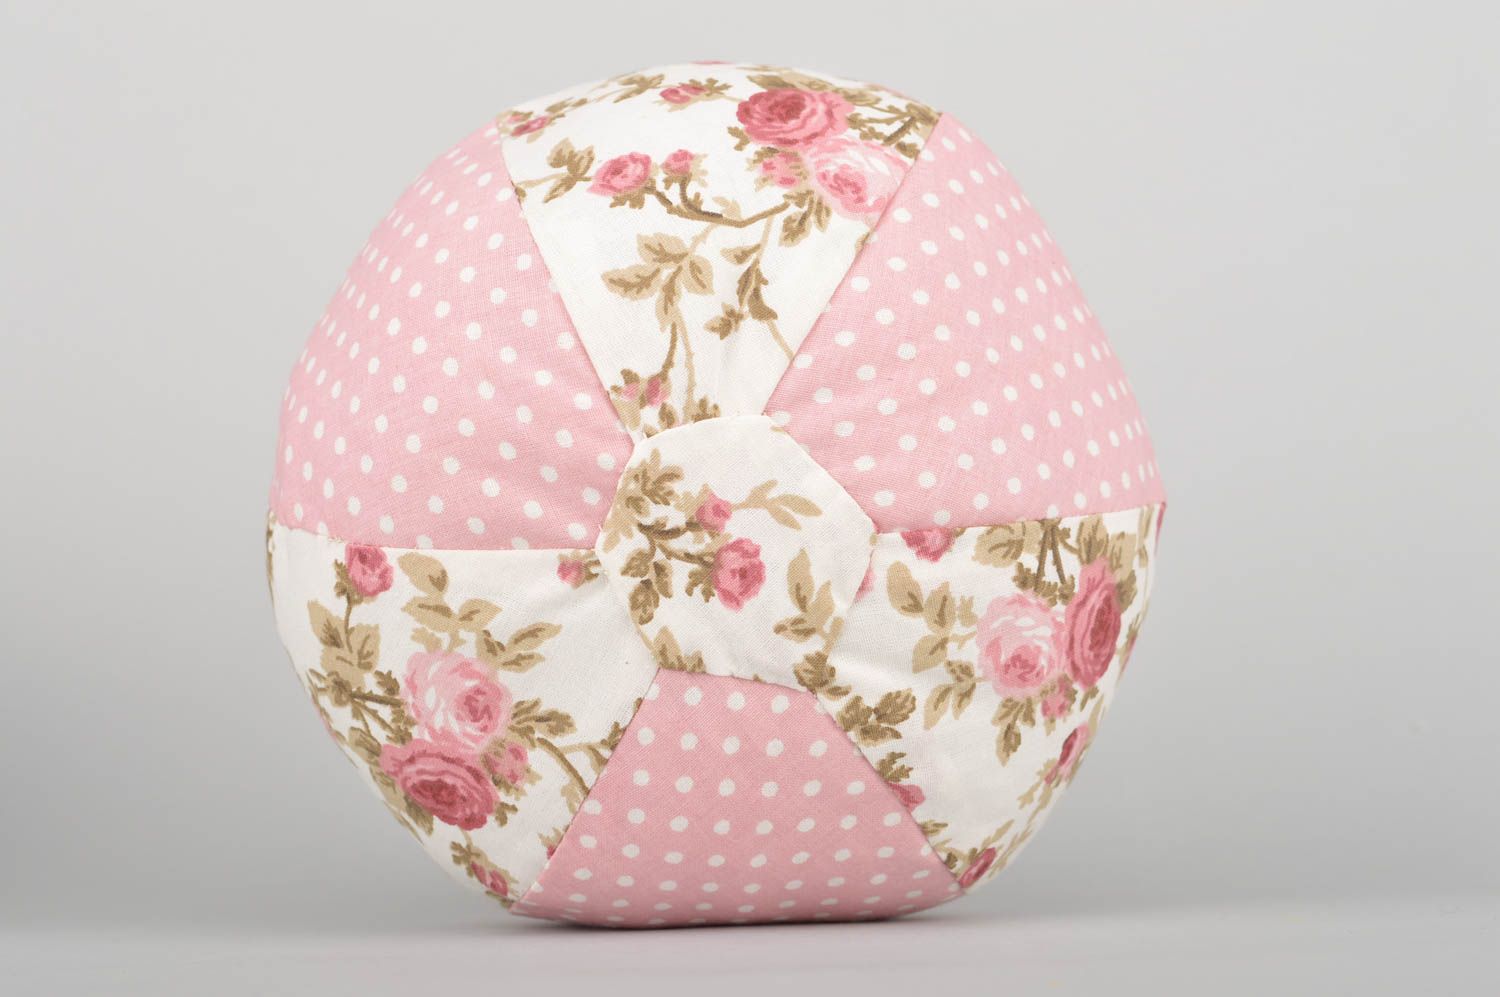 Мягкая игрушка мячик из ткани ручной работы в розовых тонах красивый нежный фото 5